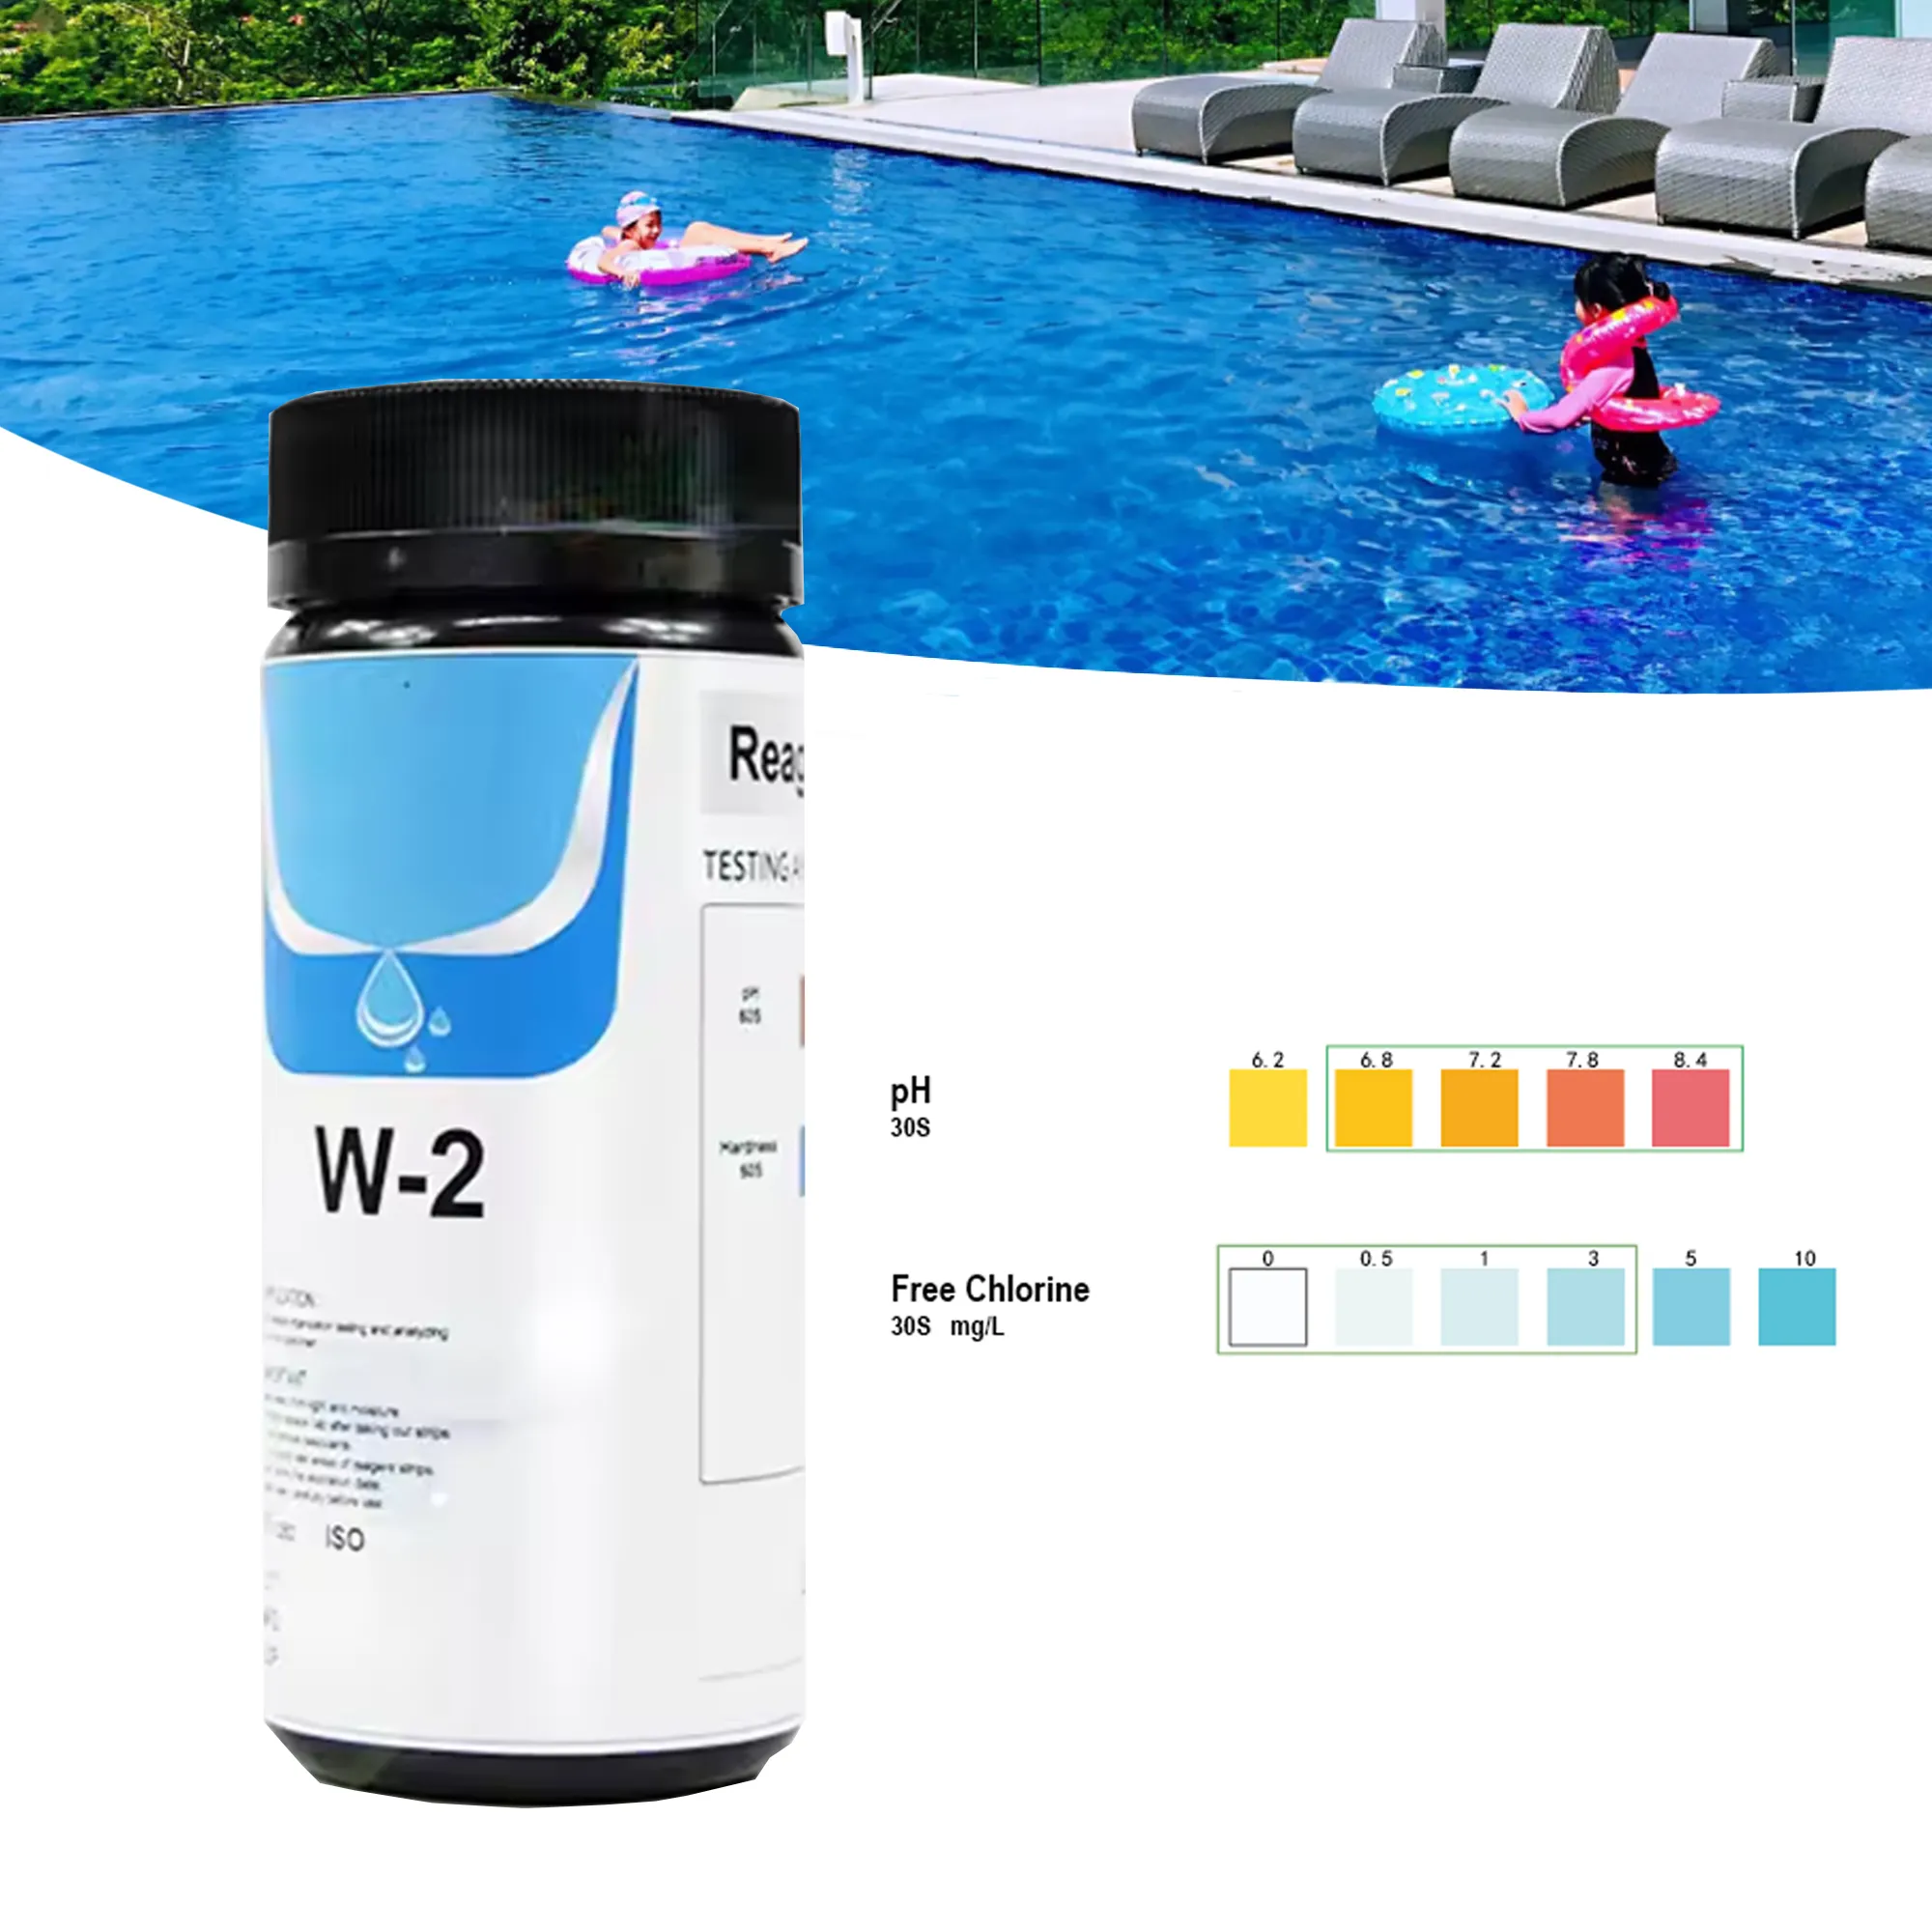 Hete Verkoop Water Teststrip Voor Zwembad & Spa Water Test Kits 2 In 1 Ph En Vrij Chloor In Desinfector